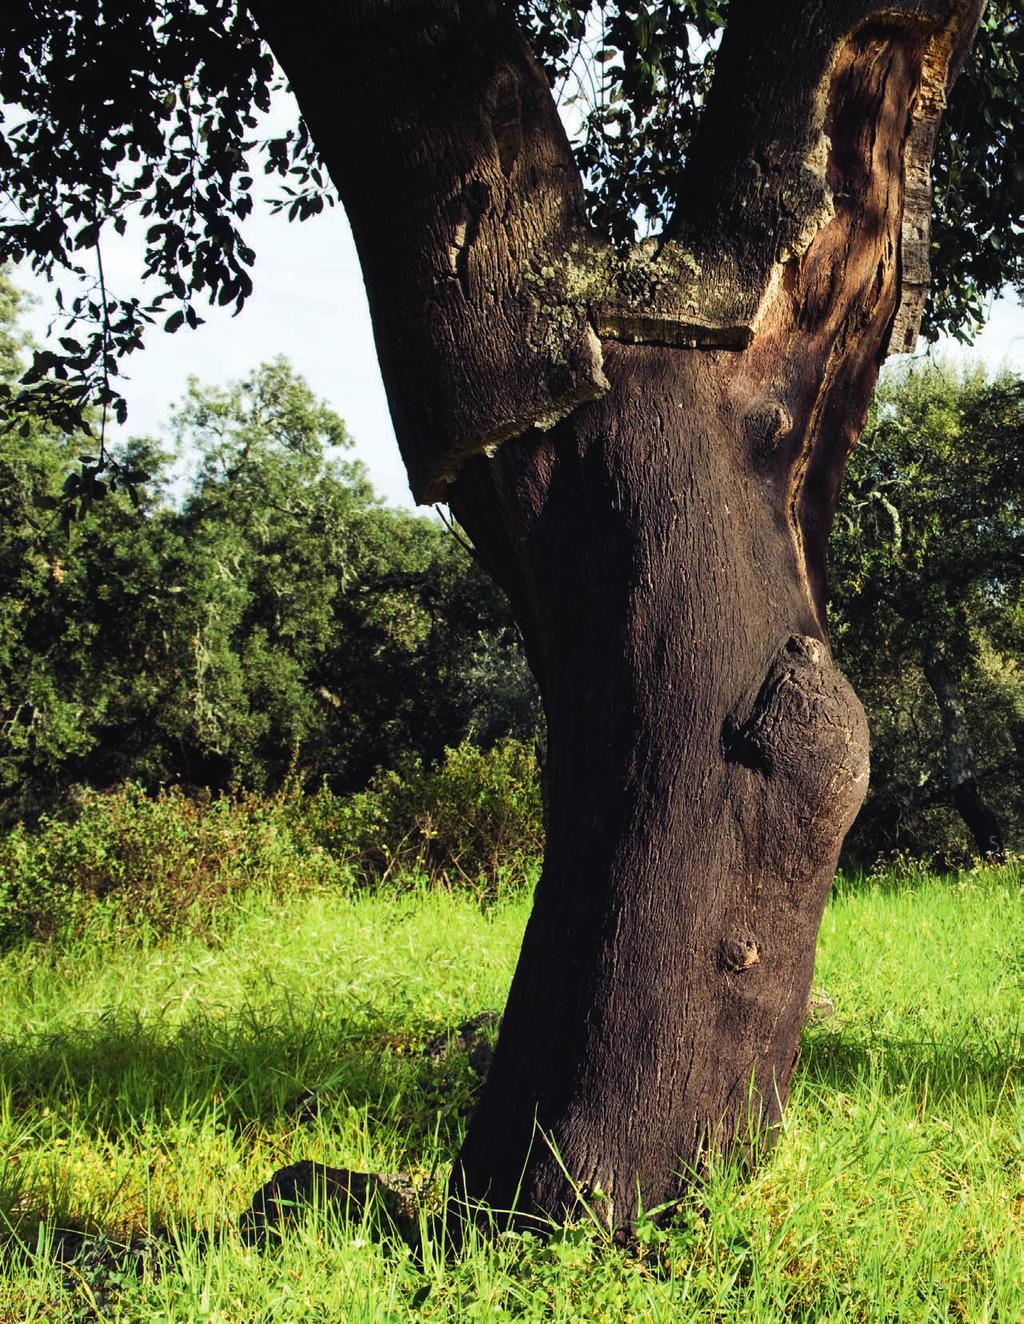 Bodenbelag Kork, ein außergewöhnlicher Rohstoff Kork ist die Rinde der Korkeiche (Quercus Suber L.), ein 100 % natürliches Pflanzengewebe, das Stamm und Äste bedeckt.